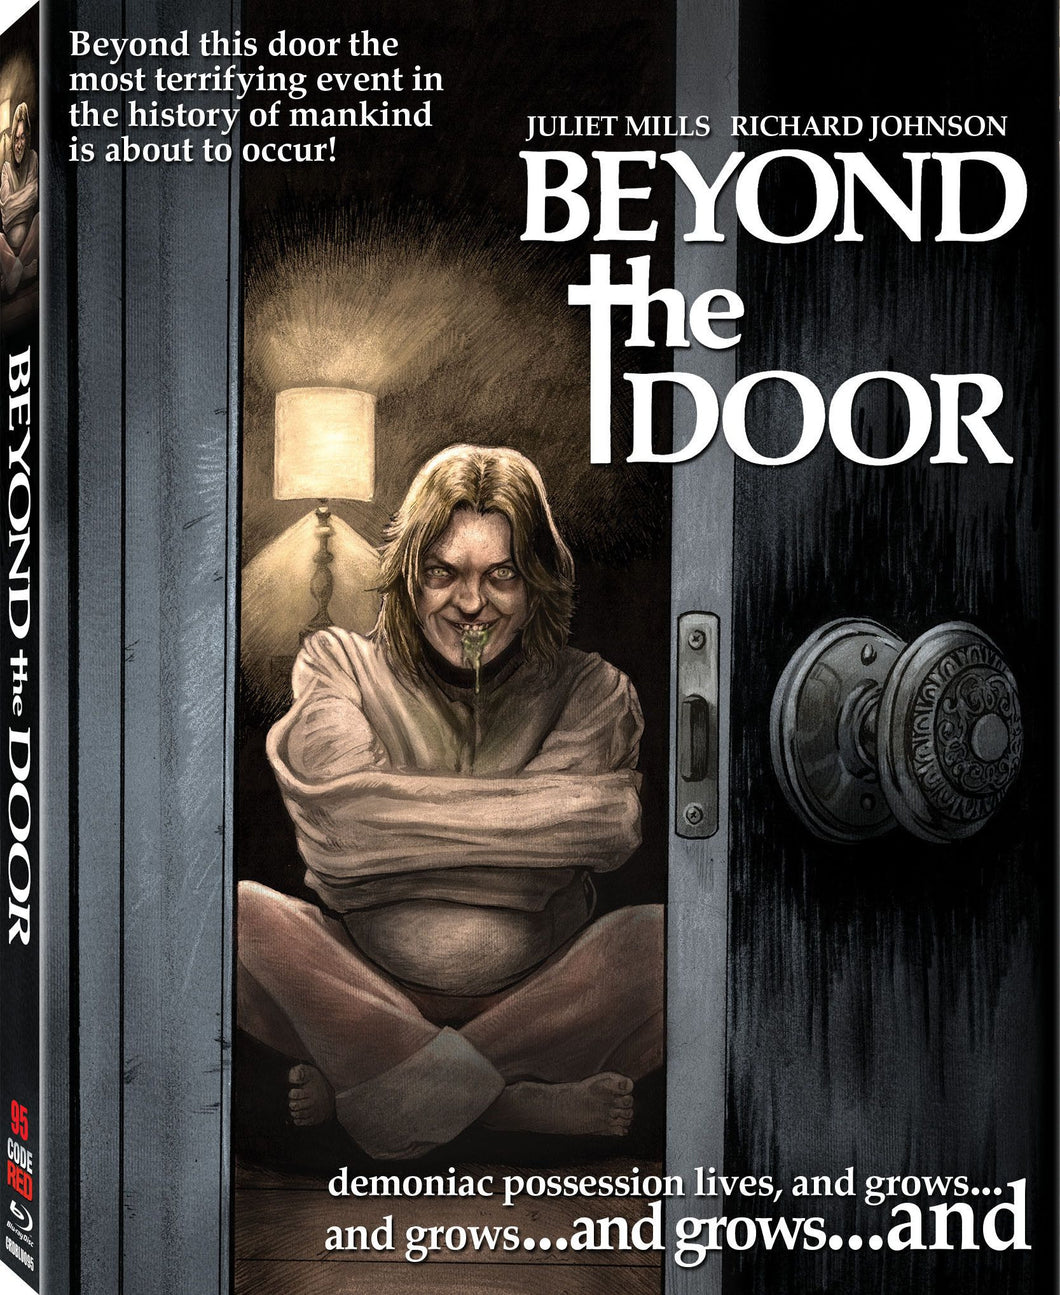 Beyond the Door (Blu-ray): Ronin Flix - Slipcover